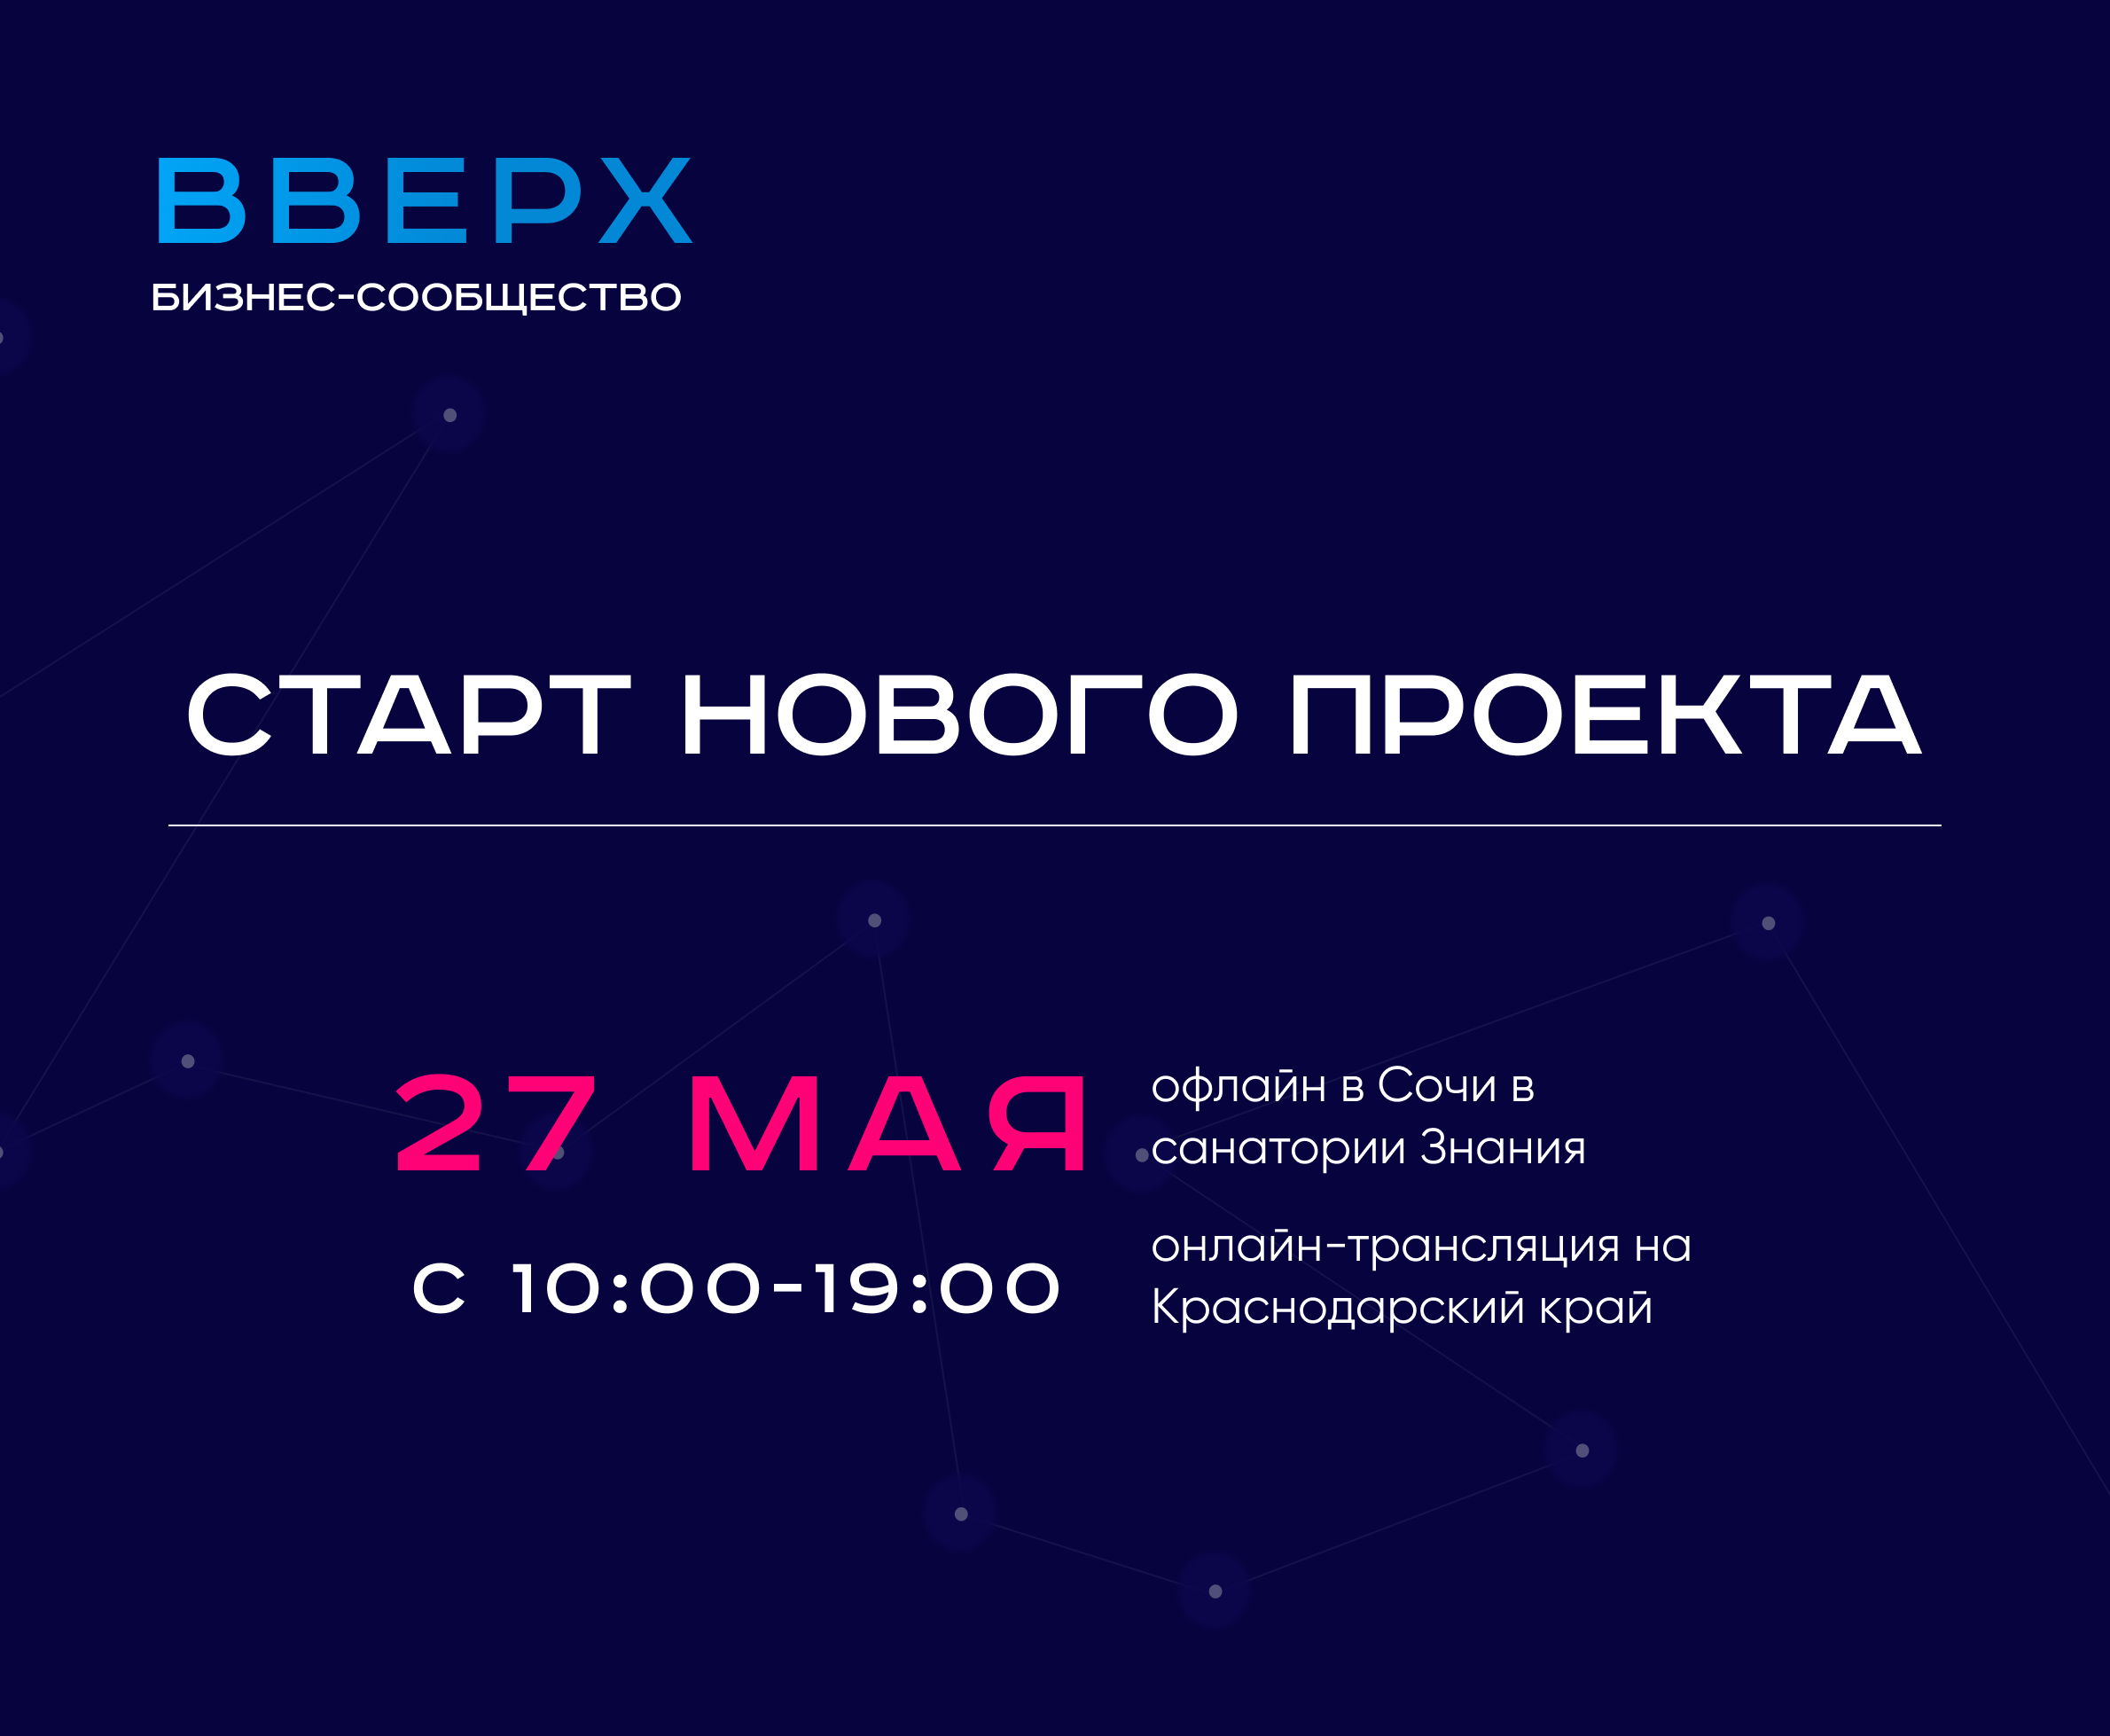 Бесплатный интенсив по старту и развитию бизнеса от проекта «ВВЕРХ» пройдет в Сочи 27 мая